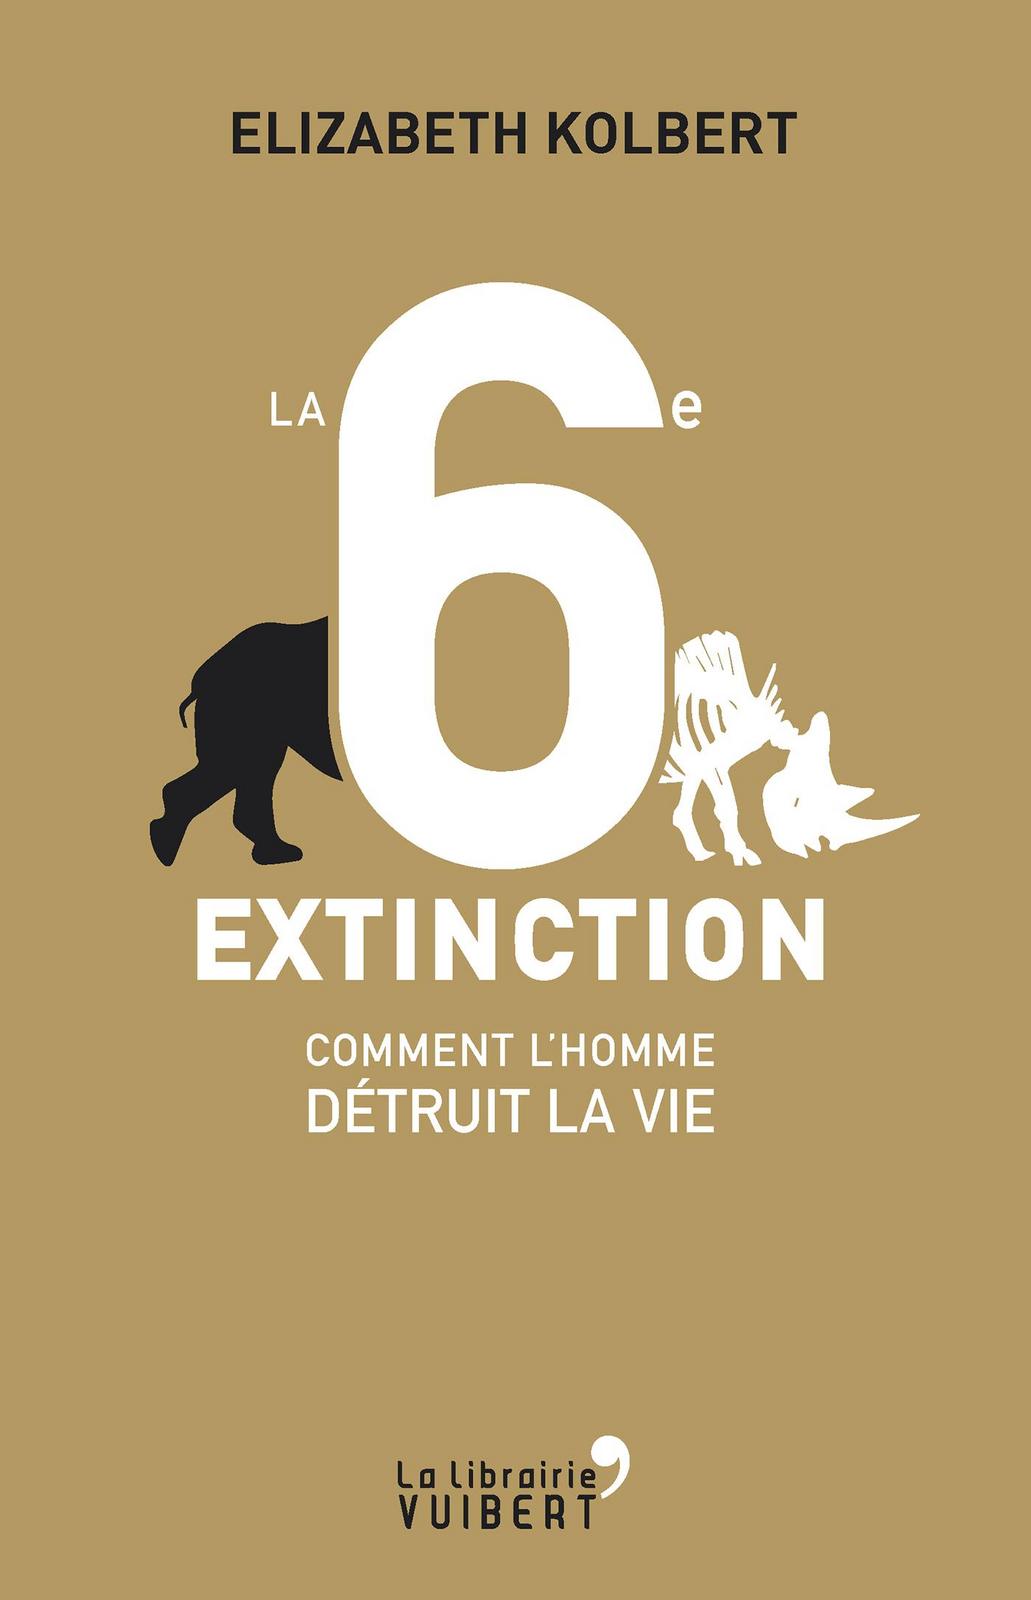 Elizabeth Kolbert: La sixième extinction : comment l'homme détruit la vie (French language, 2015)